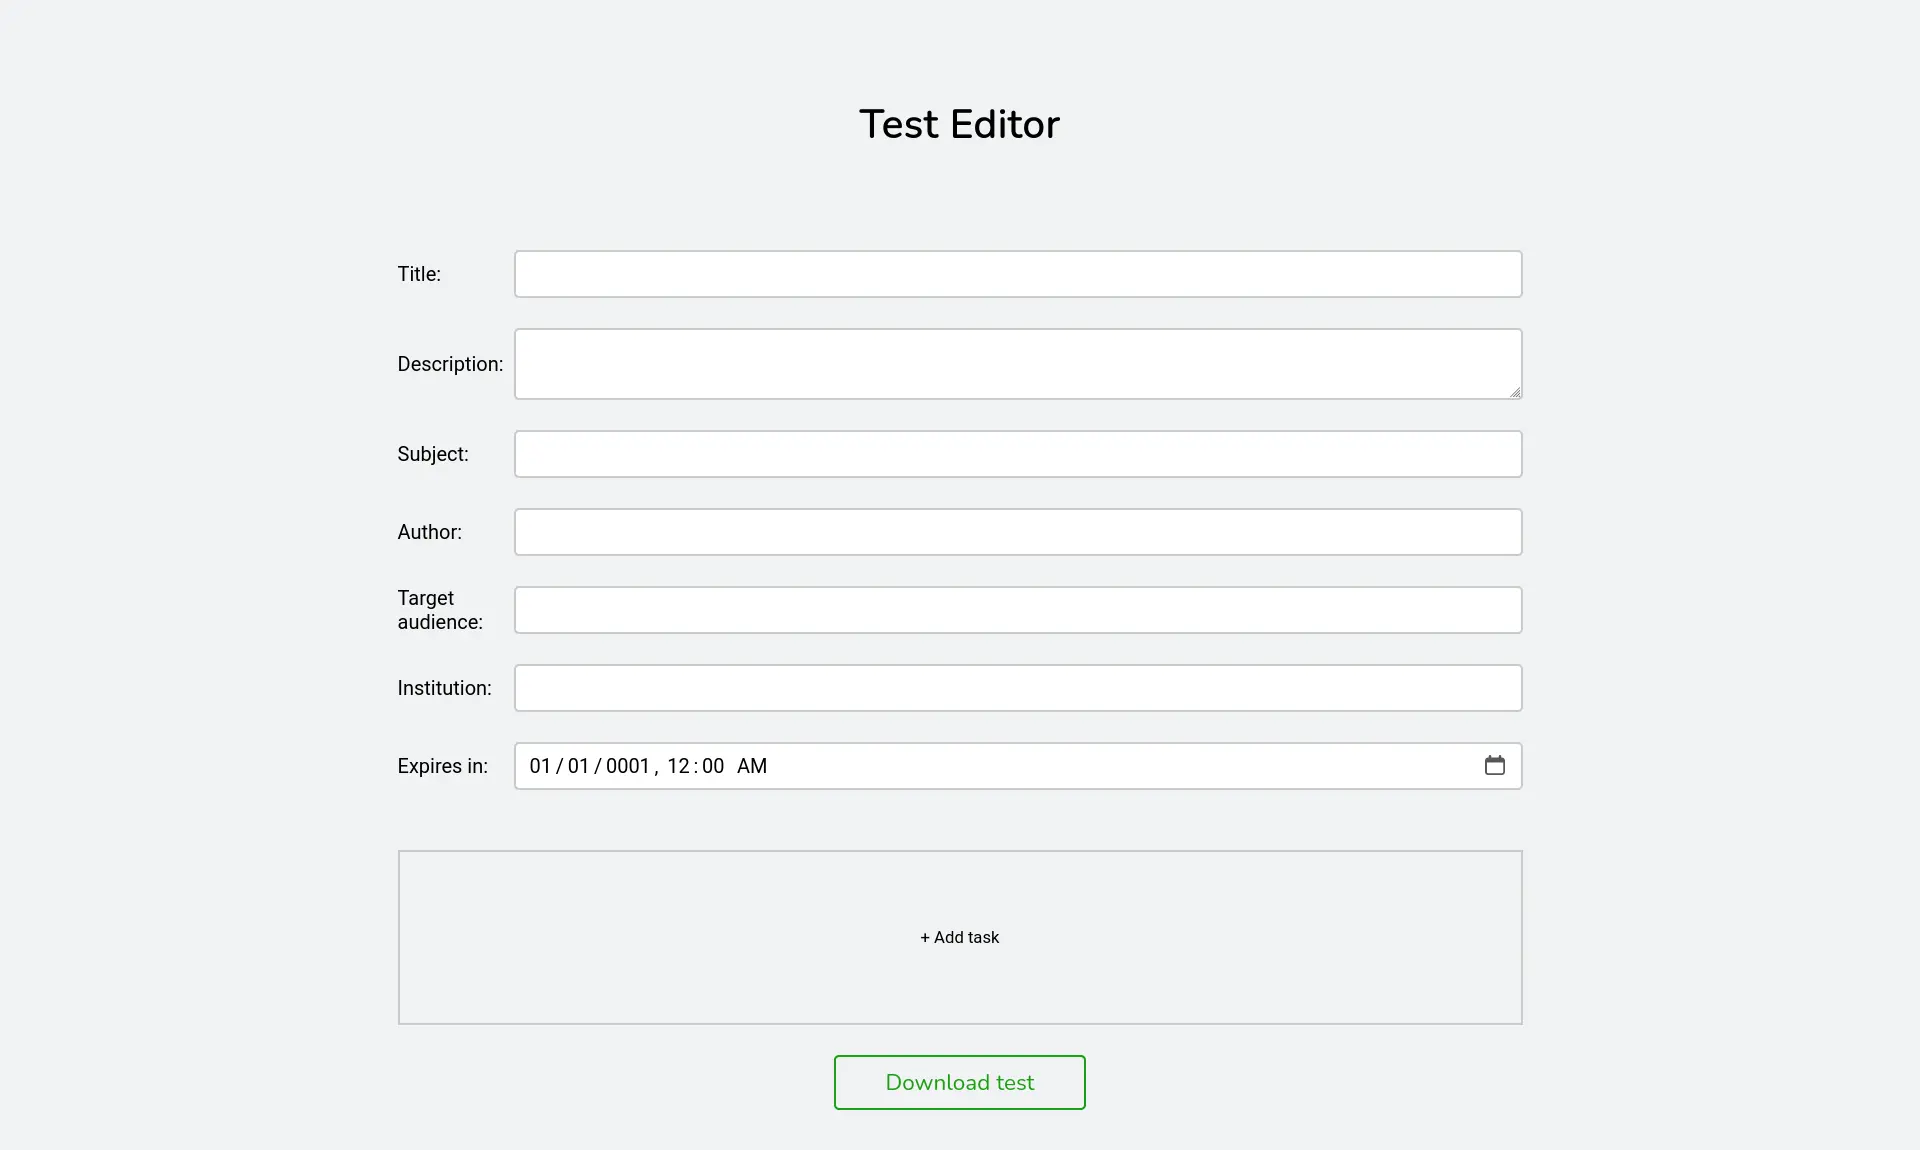 Test editor empty